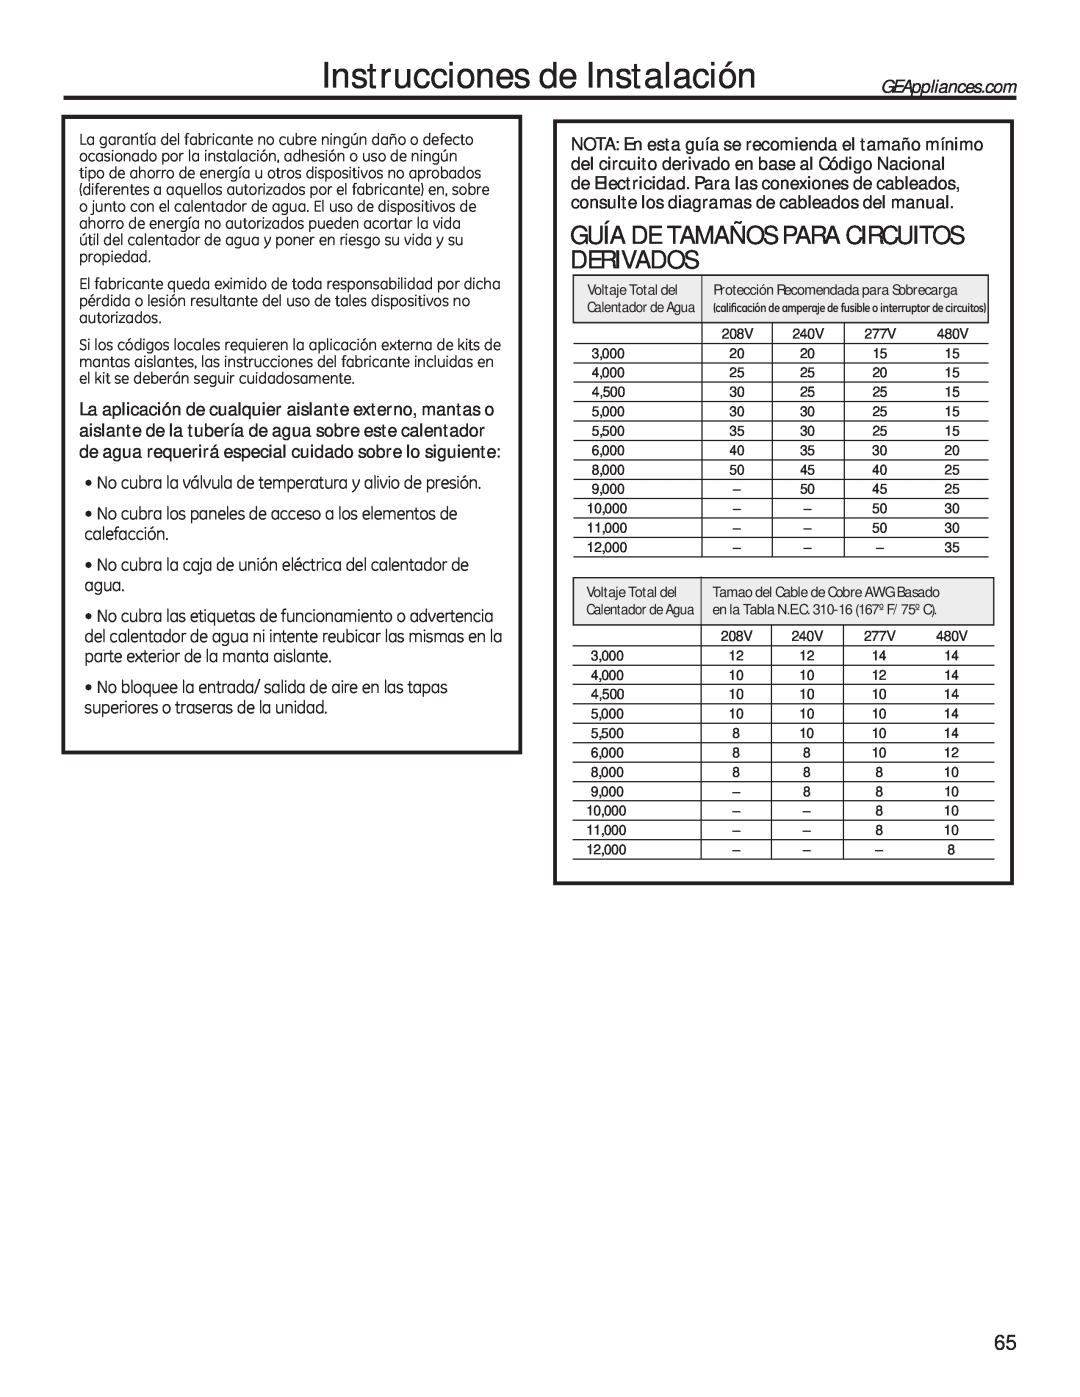 GE 49-50292 Guía De Tamaños Para Circuitos Derivados, Instrucciones de Instalación, VxshulruhvRWudvhudvGhOdXqlgdg 